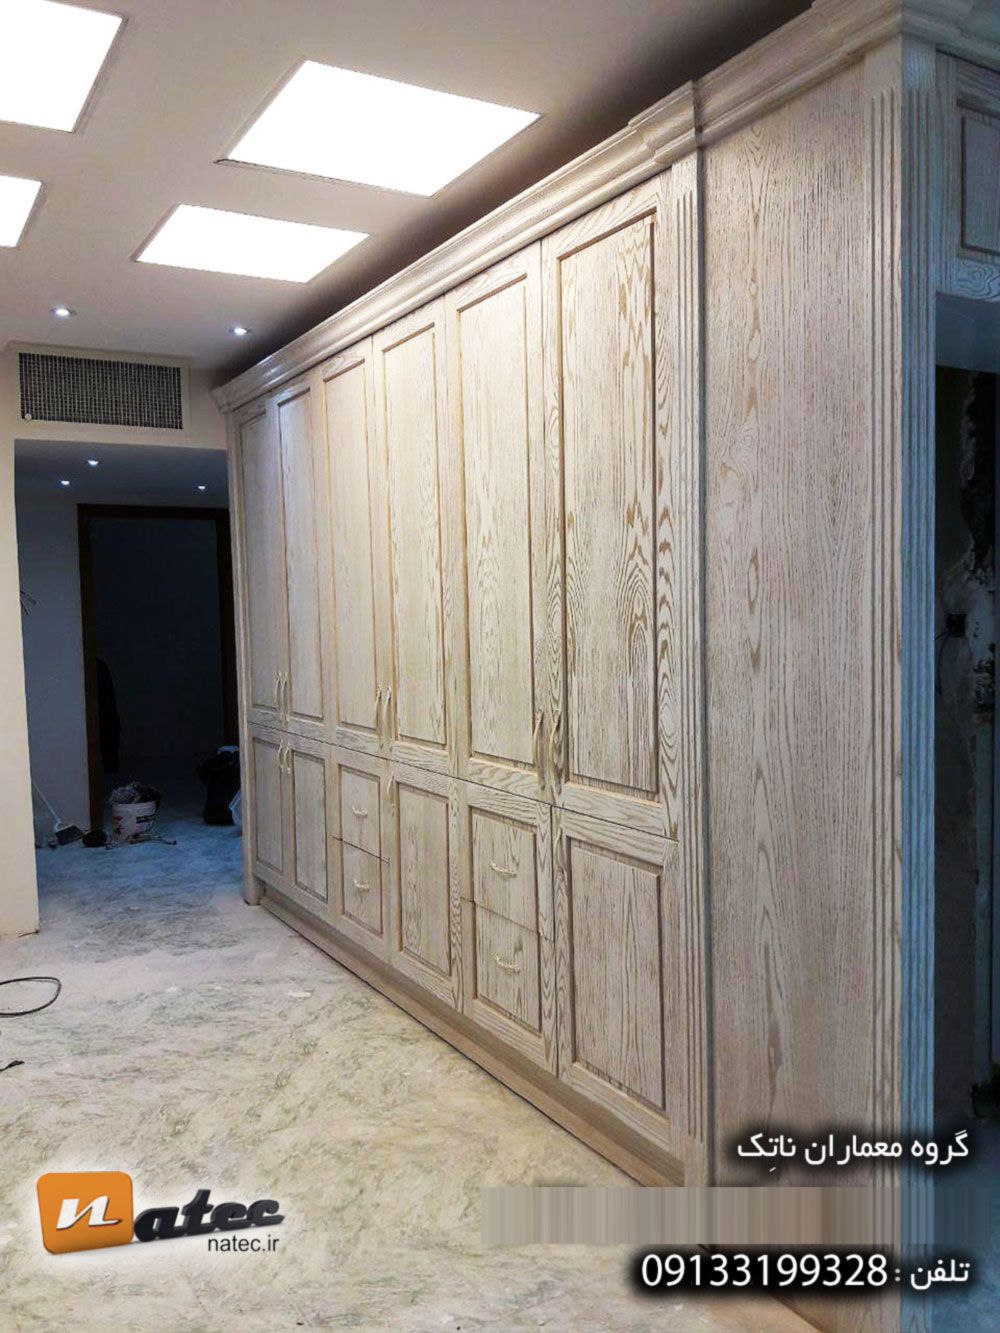 بازسازی دکوراسیون منزل در اصفهان09